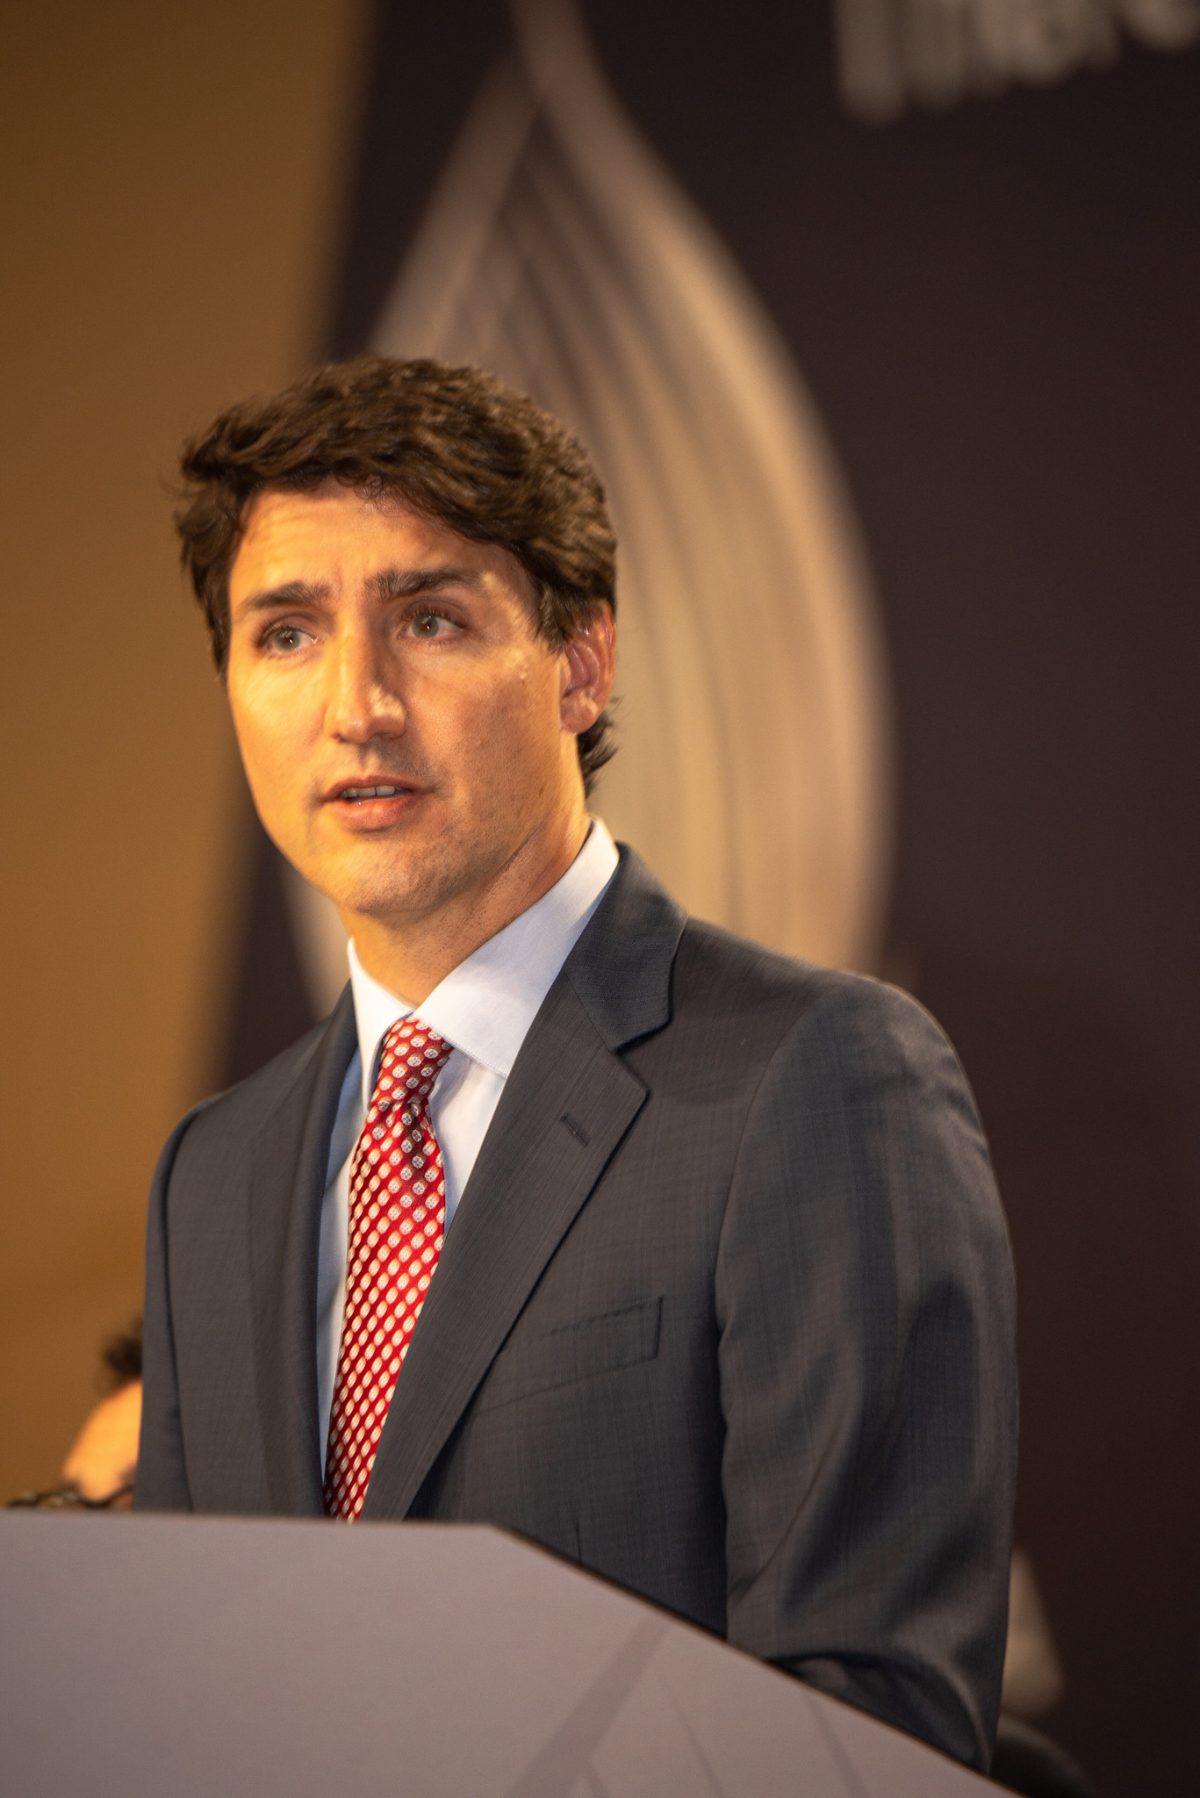 El mensaje de Trudeau a su País: Piensen en su salud, nada les faltará…